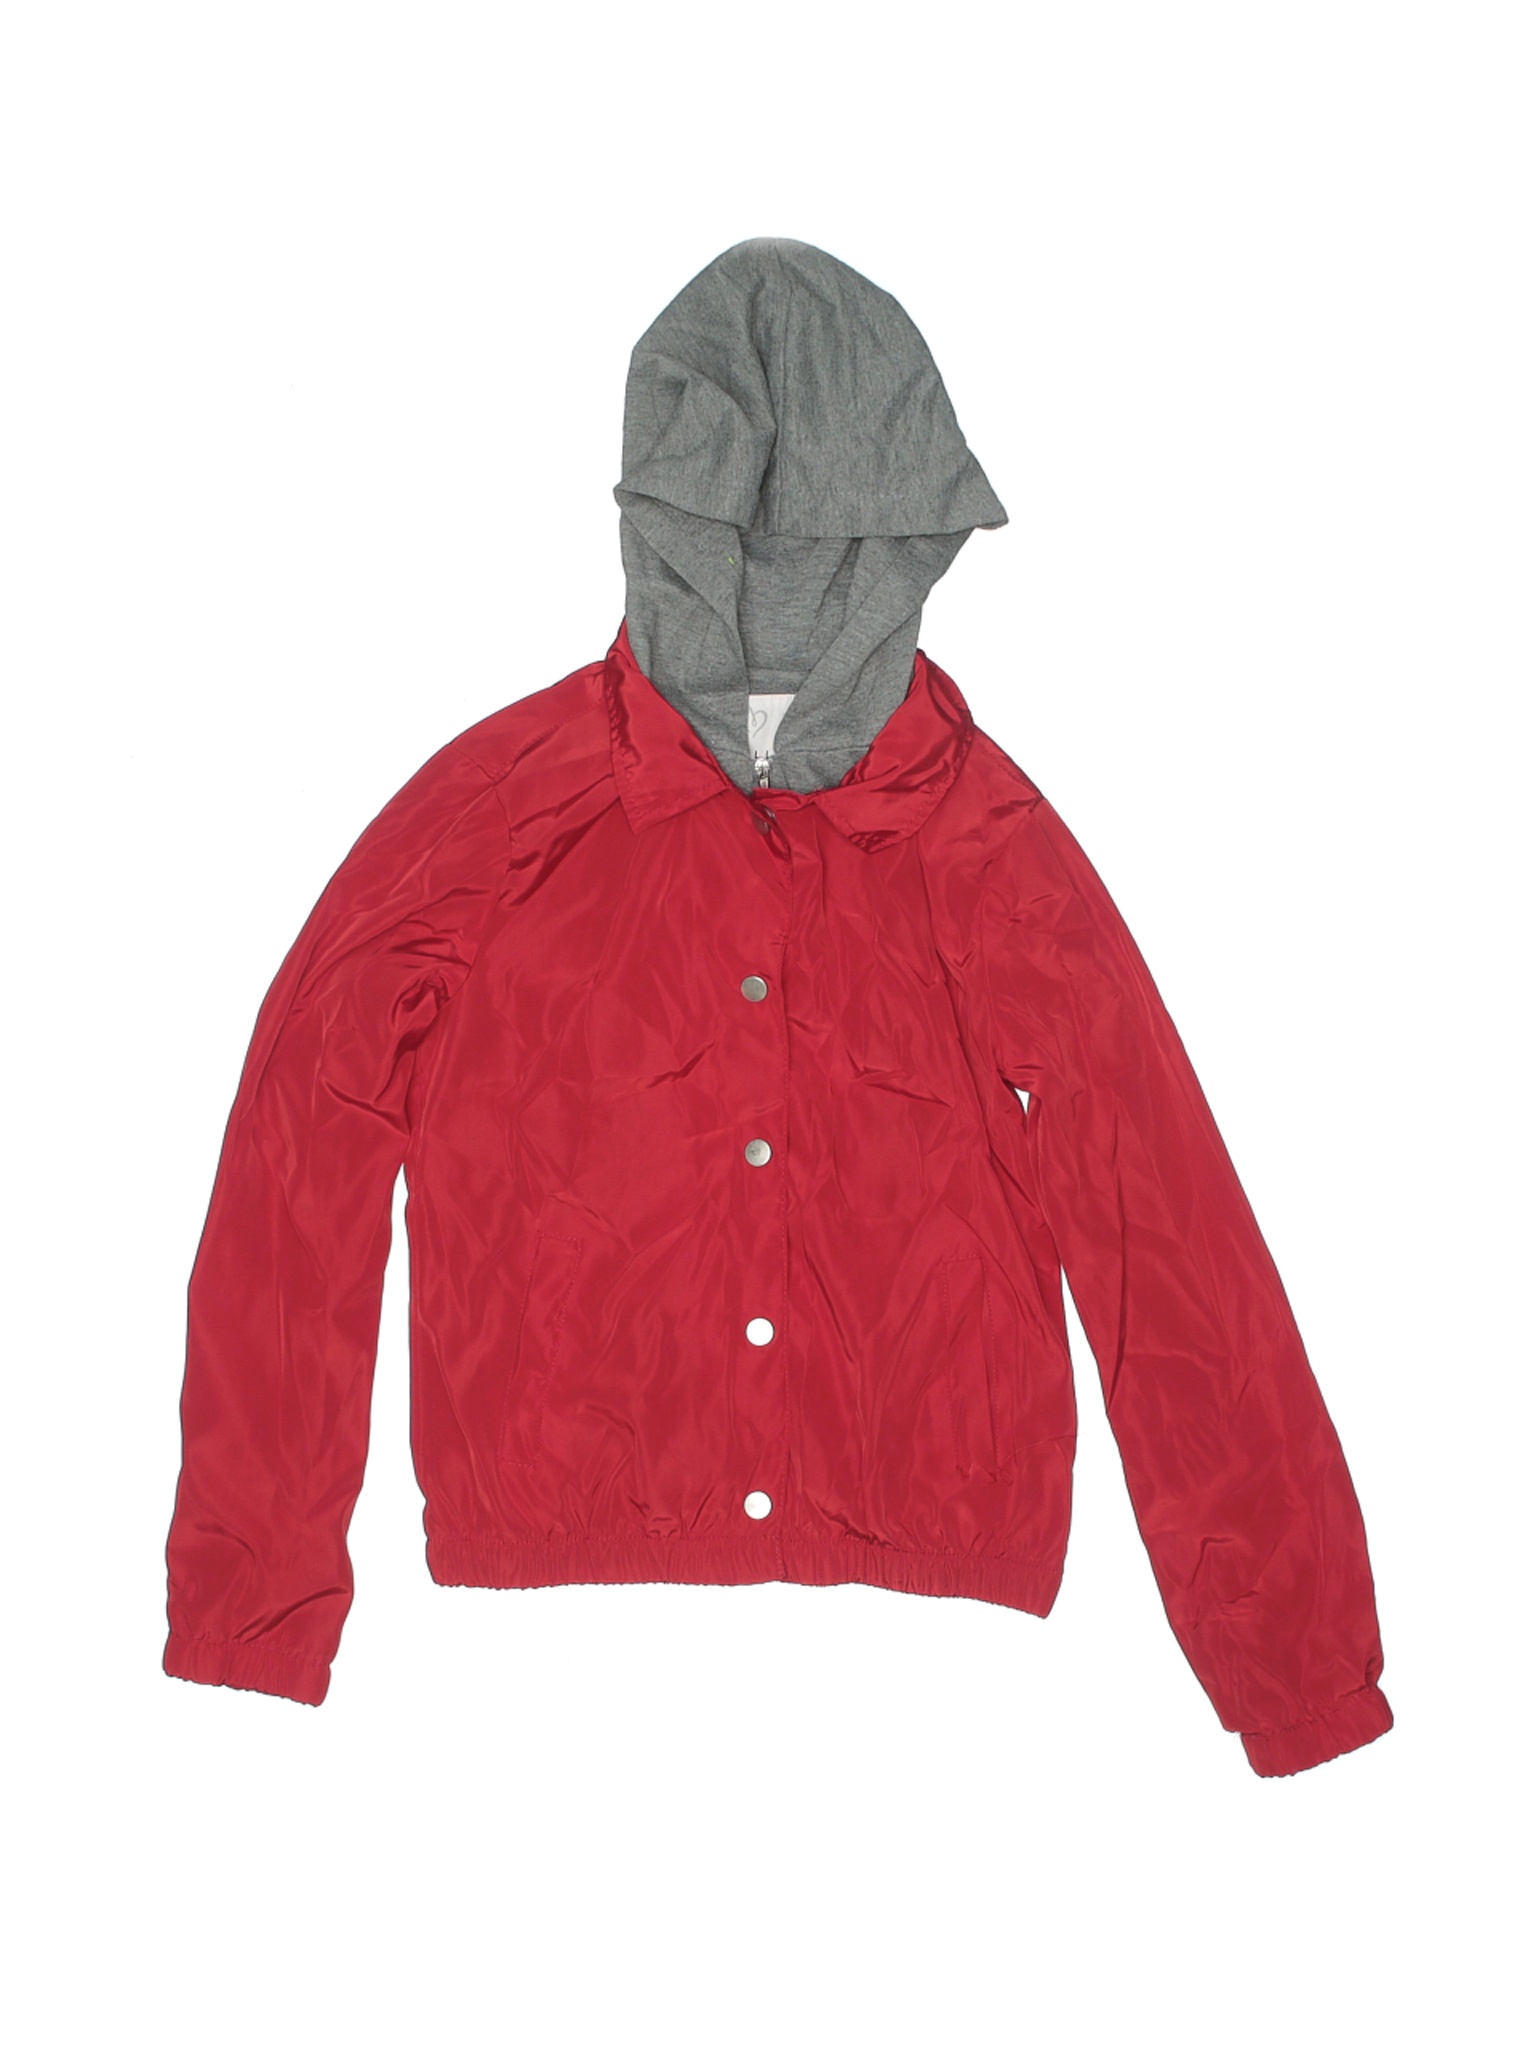 Full Tilt Girls Red Jacket XS Youth | eBay